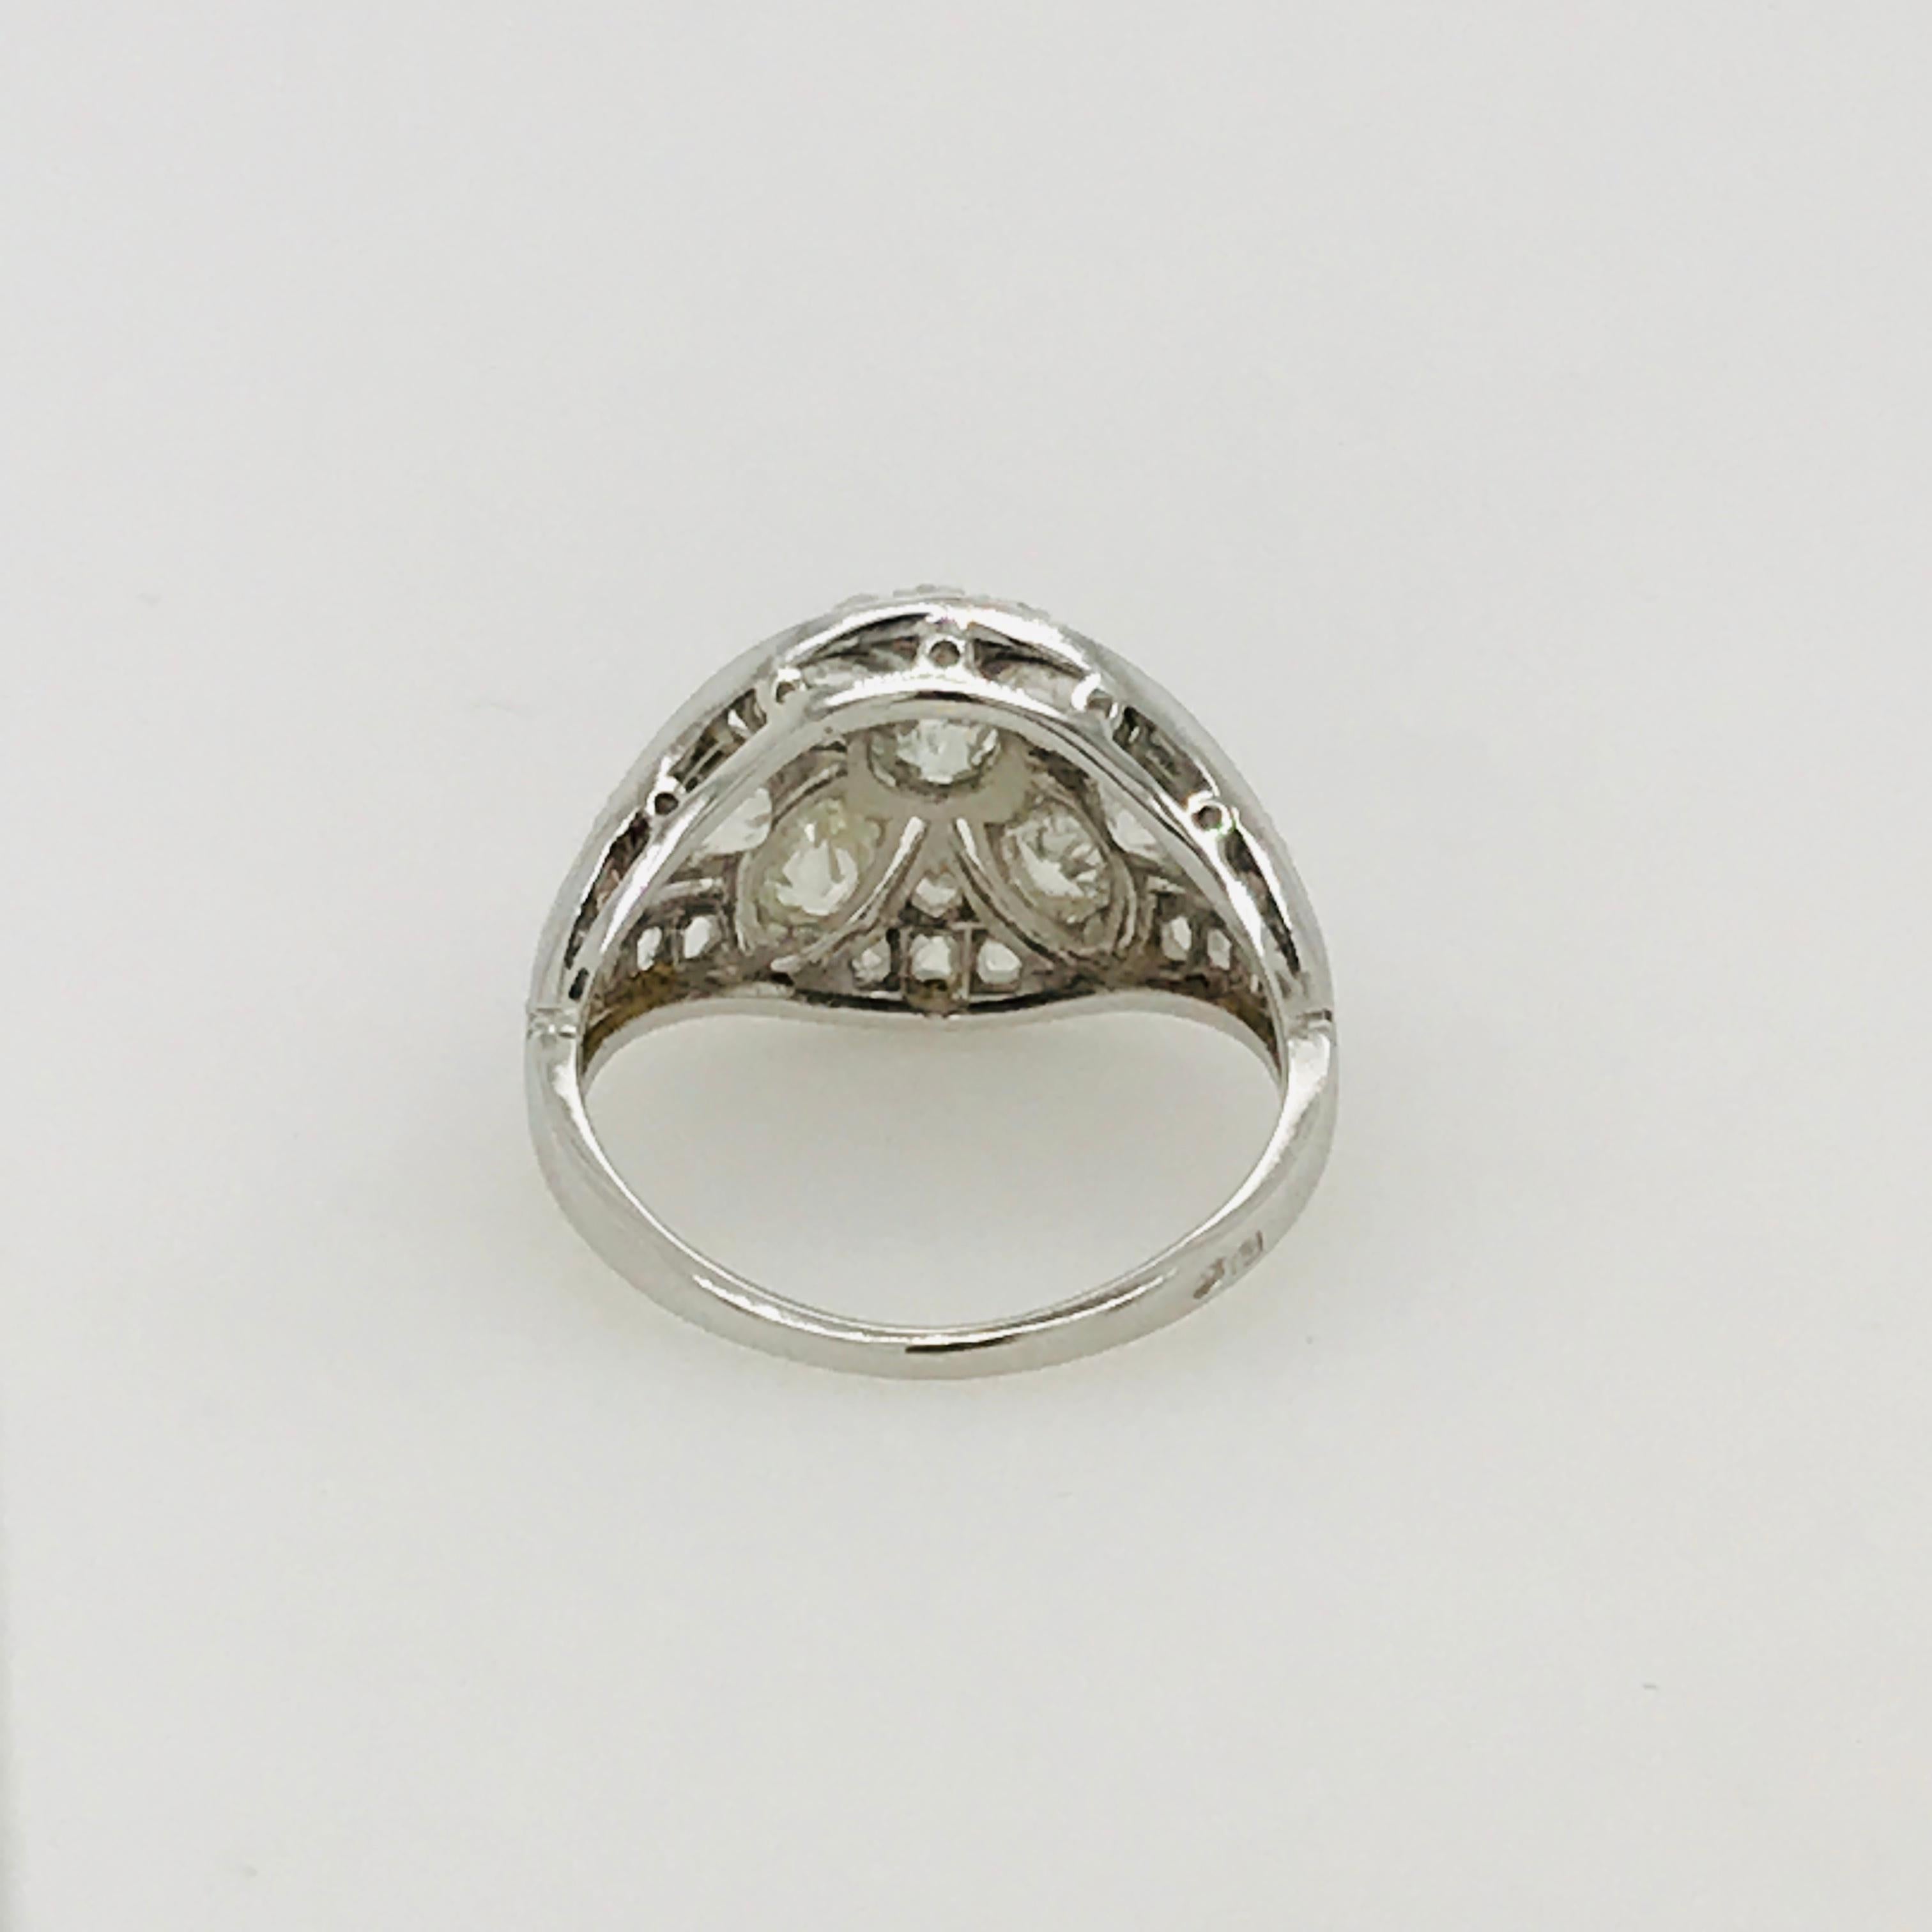 Art Deco Period Diamond Ring circa 1930 Set in Platinum and 18 Carat White Gold (Art déco)